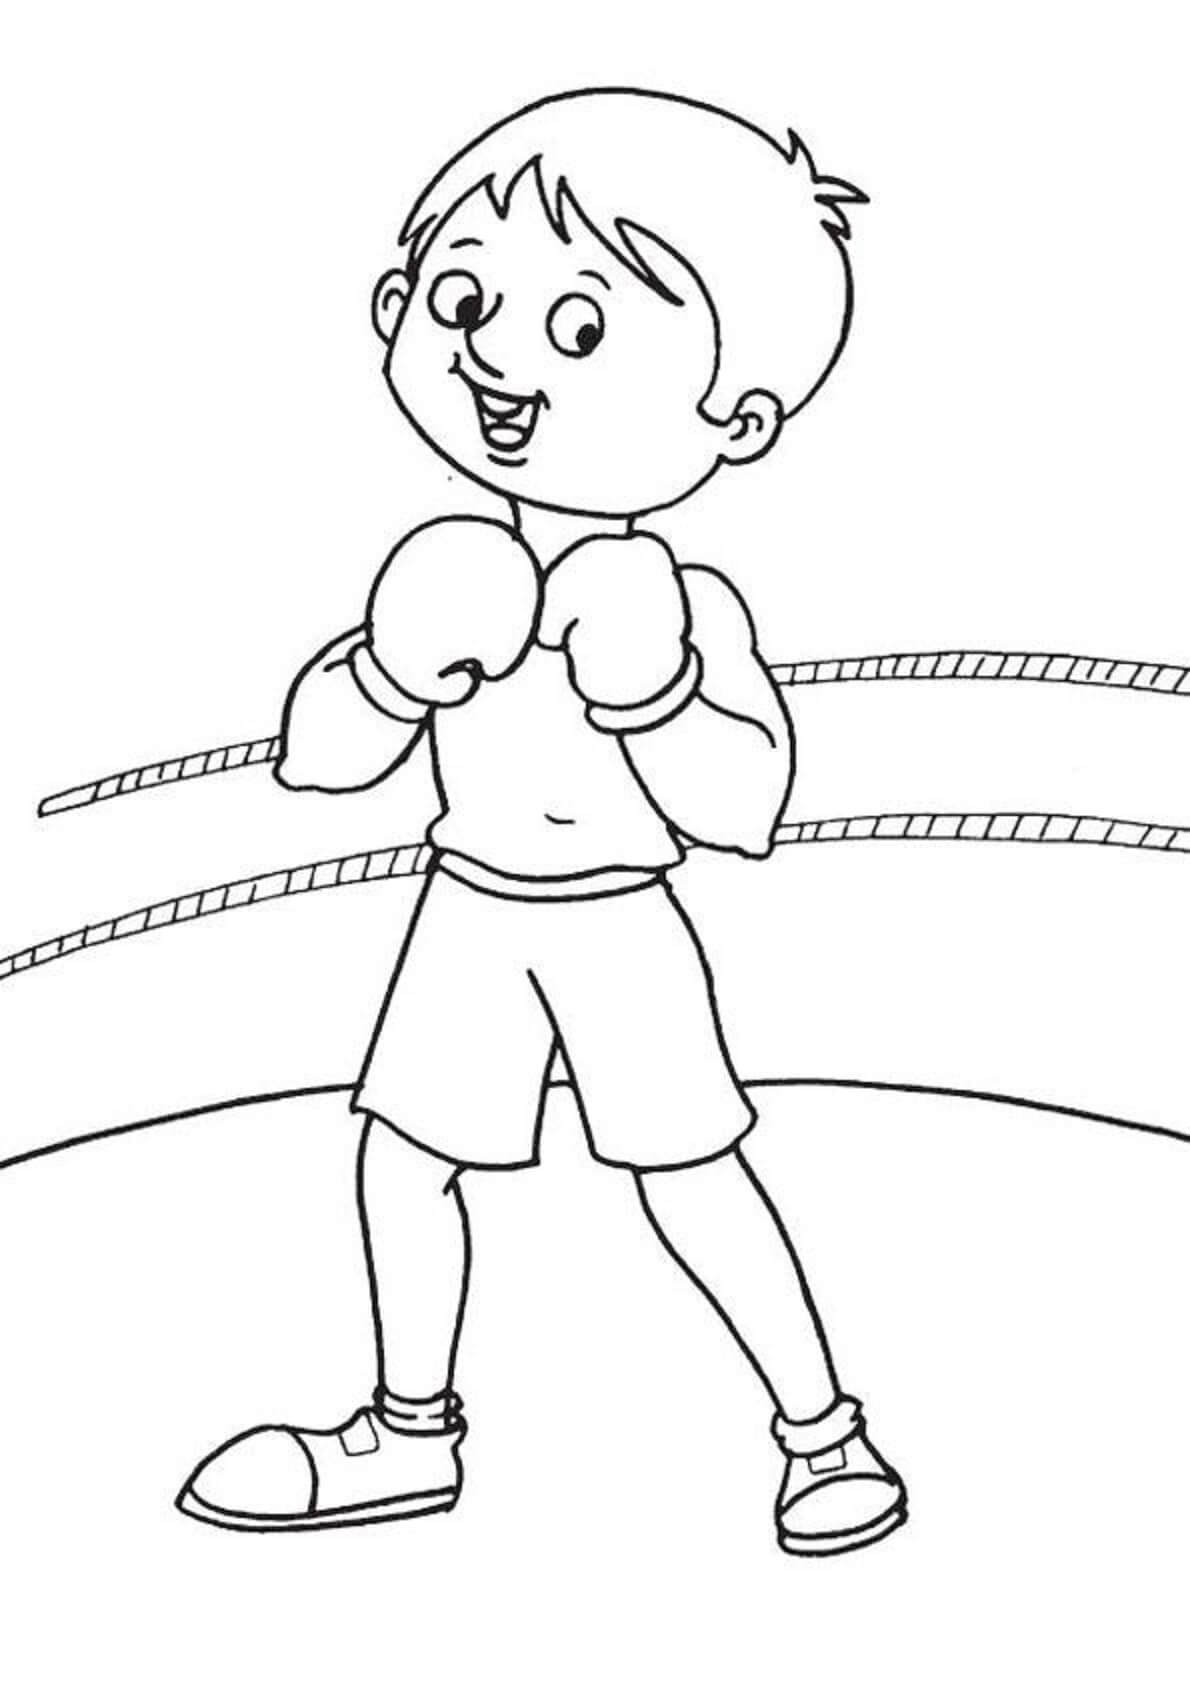 Garçon Boxeur coloring page